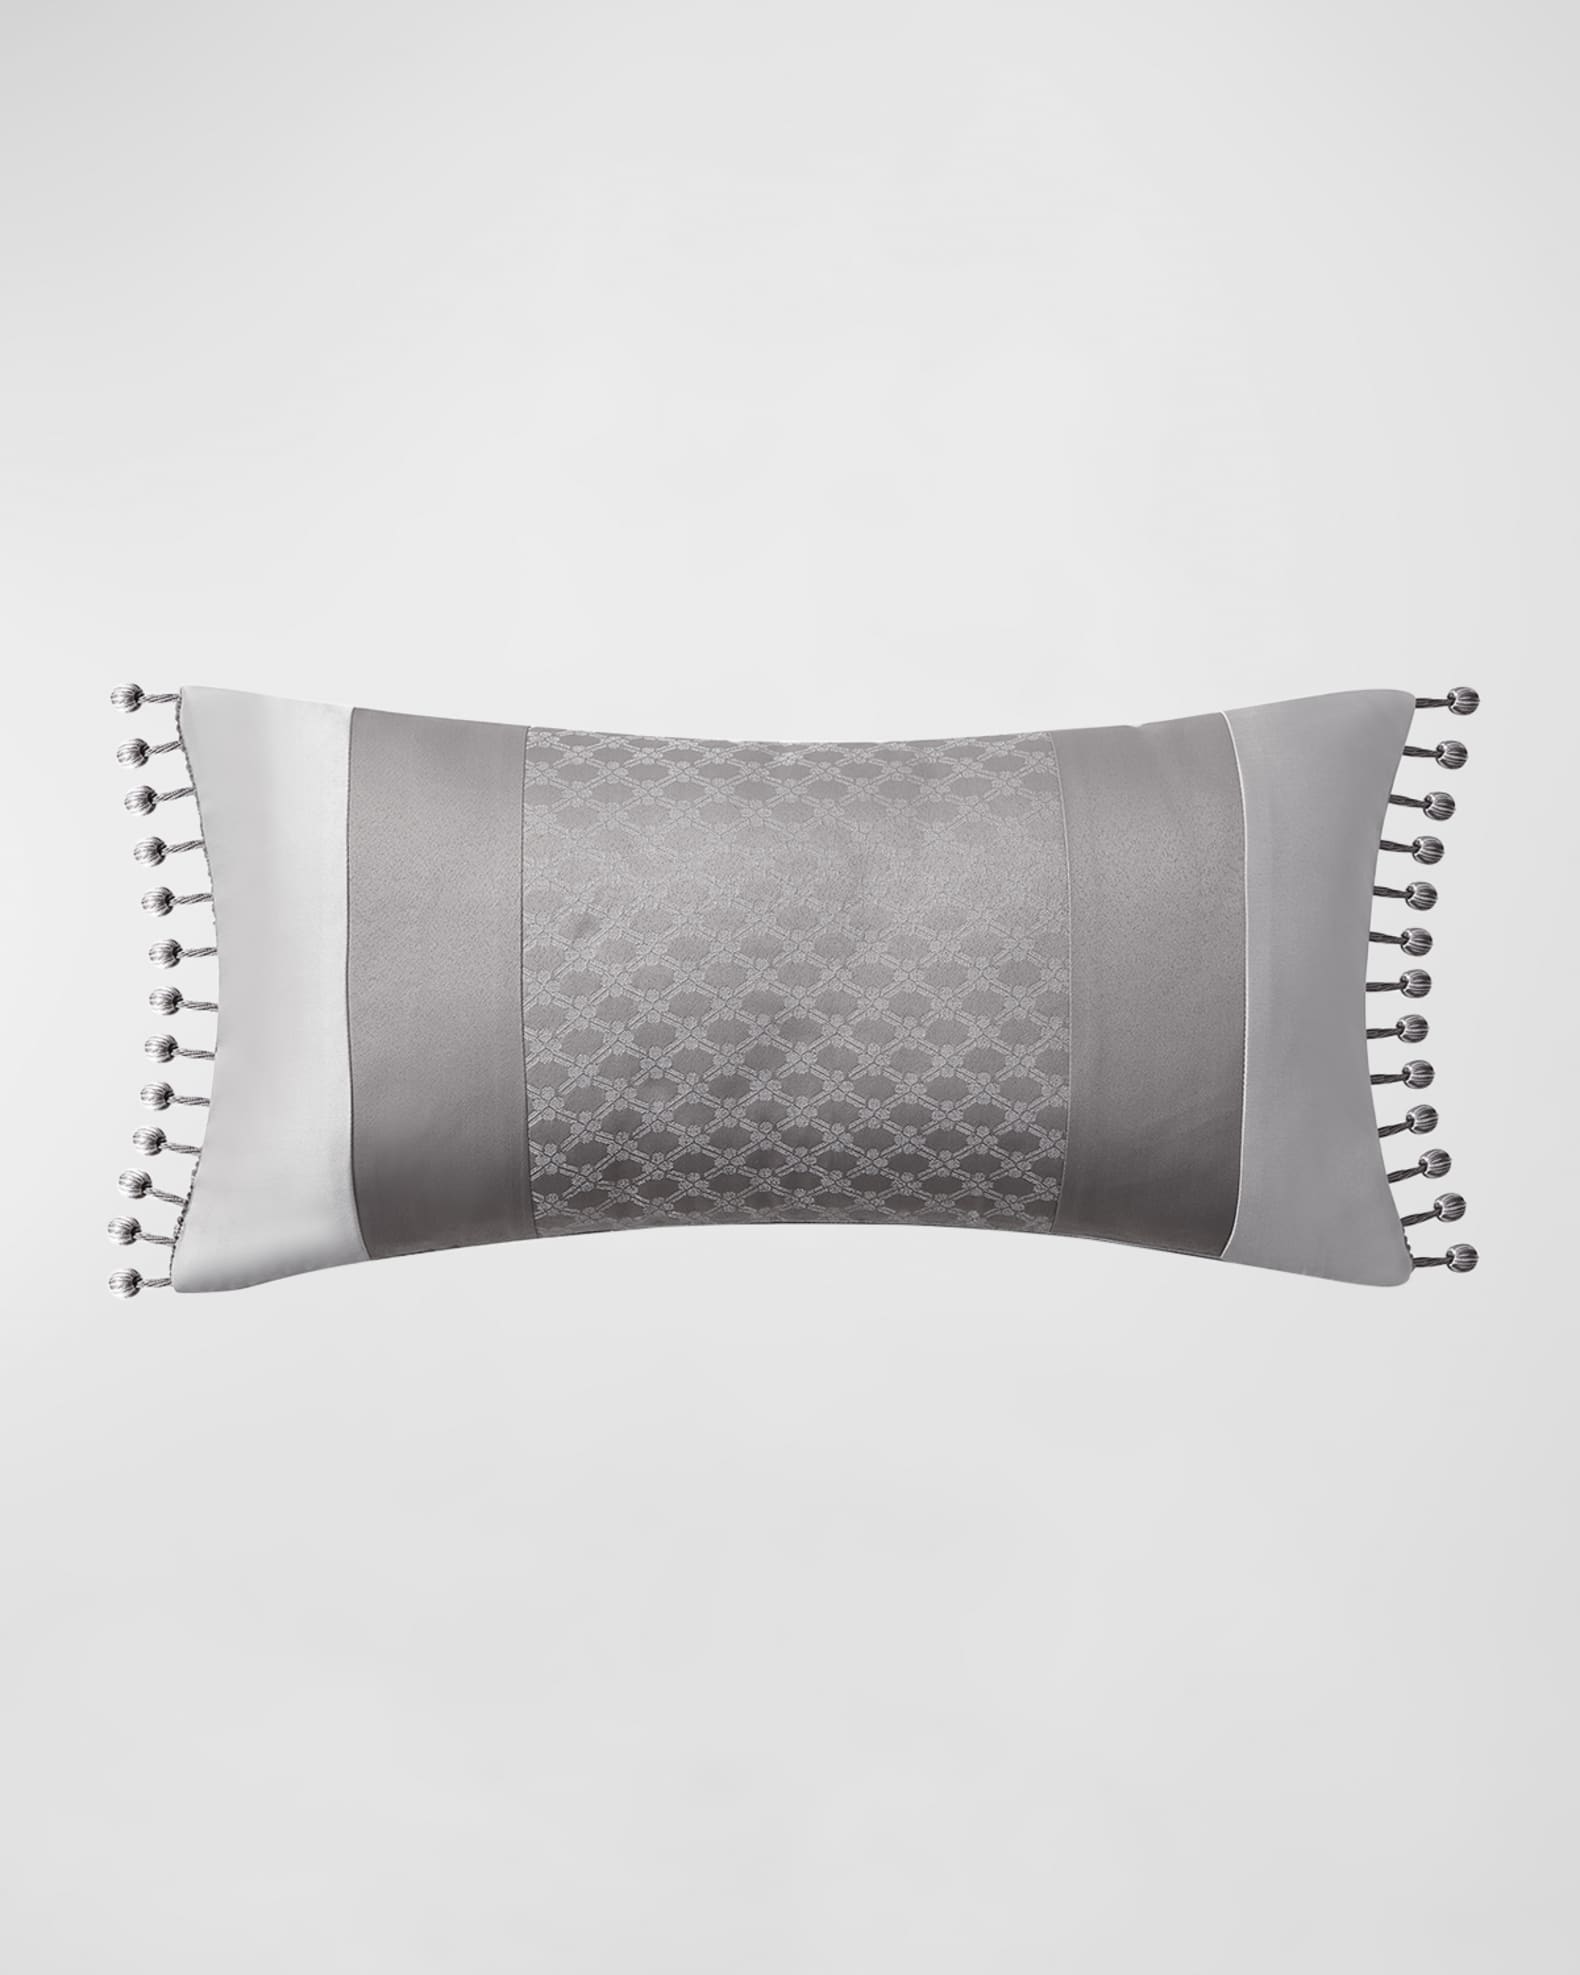 Sea Shell Print Velvet Custom Made Versace Pillows - Set of 3